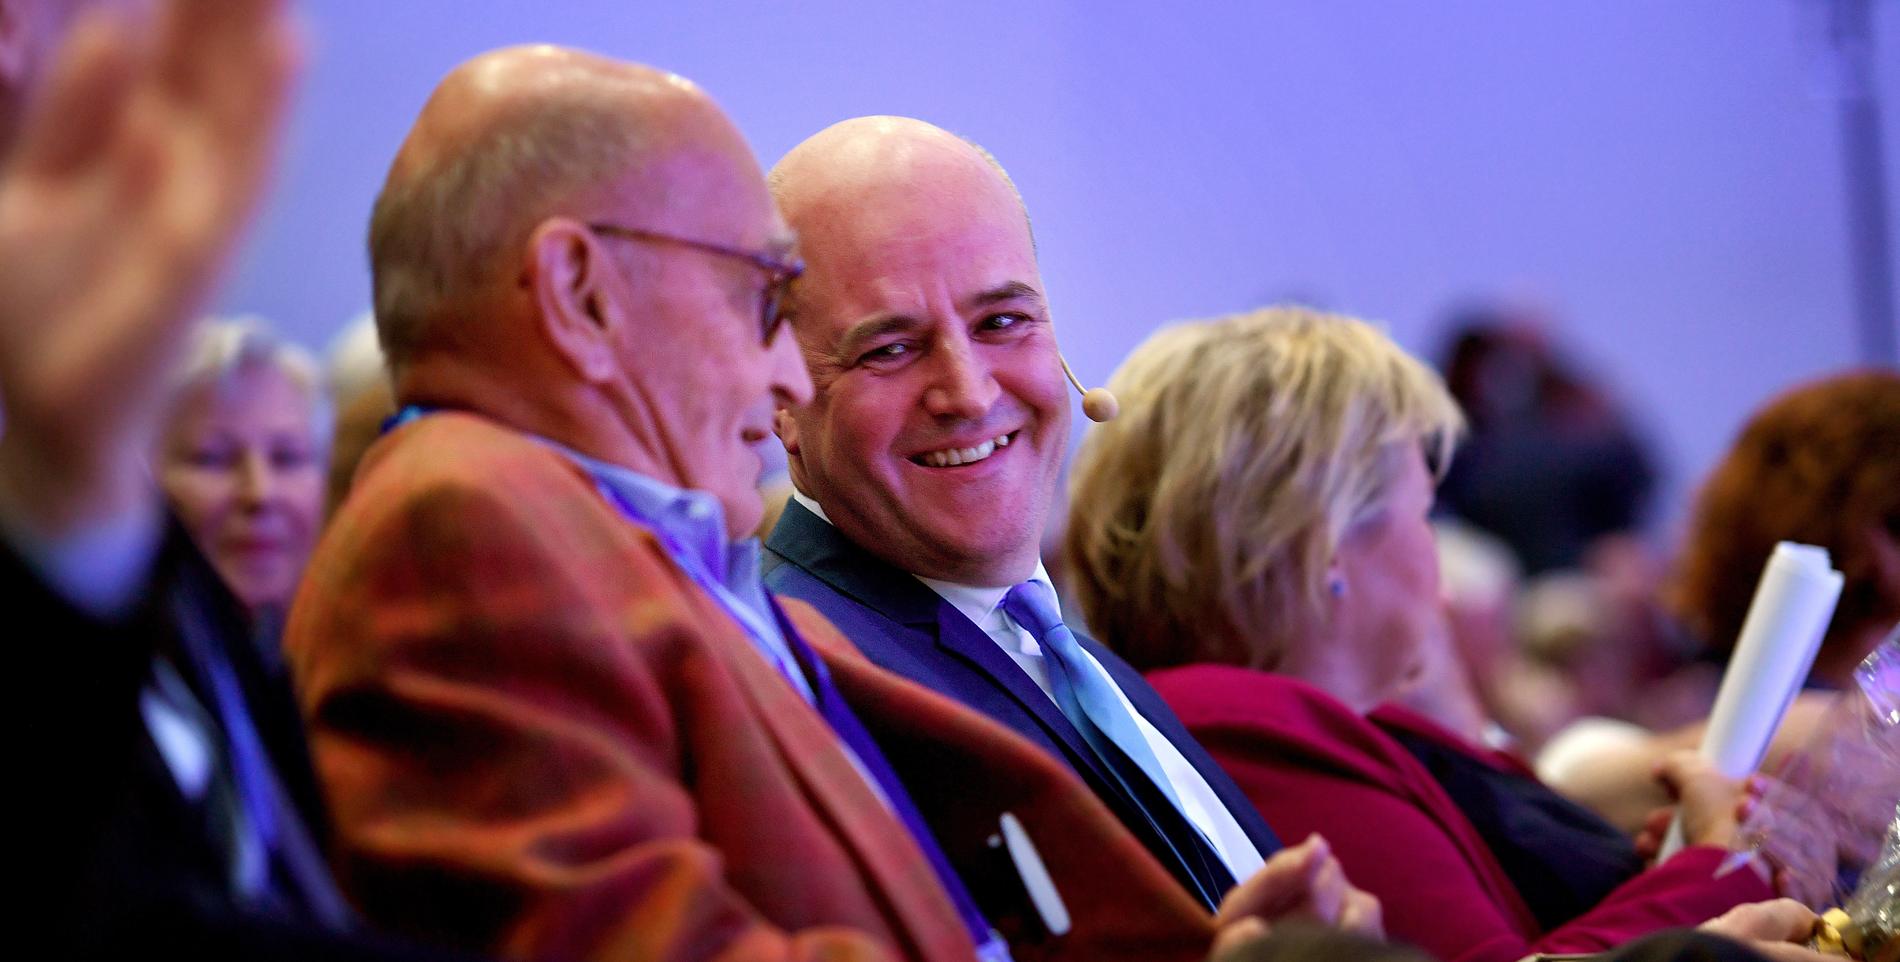 Före detta Moderatledarna Ulf Adelsohn och Fredrik Reinfeldt skrattar tillsammans under Moderaternas partistämma 2019. Inför årets stämma går Adelsohn ut i en intervju och riktar hård kritik mot kollegans, vad han kallar, ”avgörande politiska misstag”.